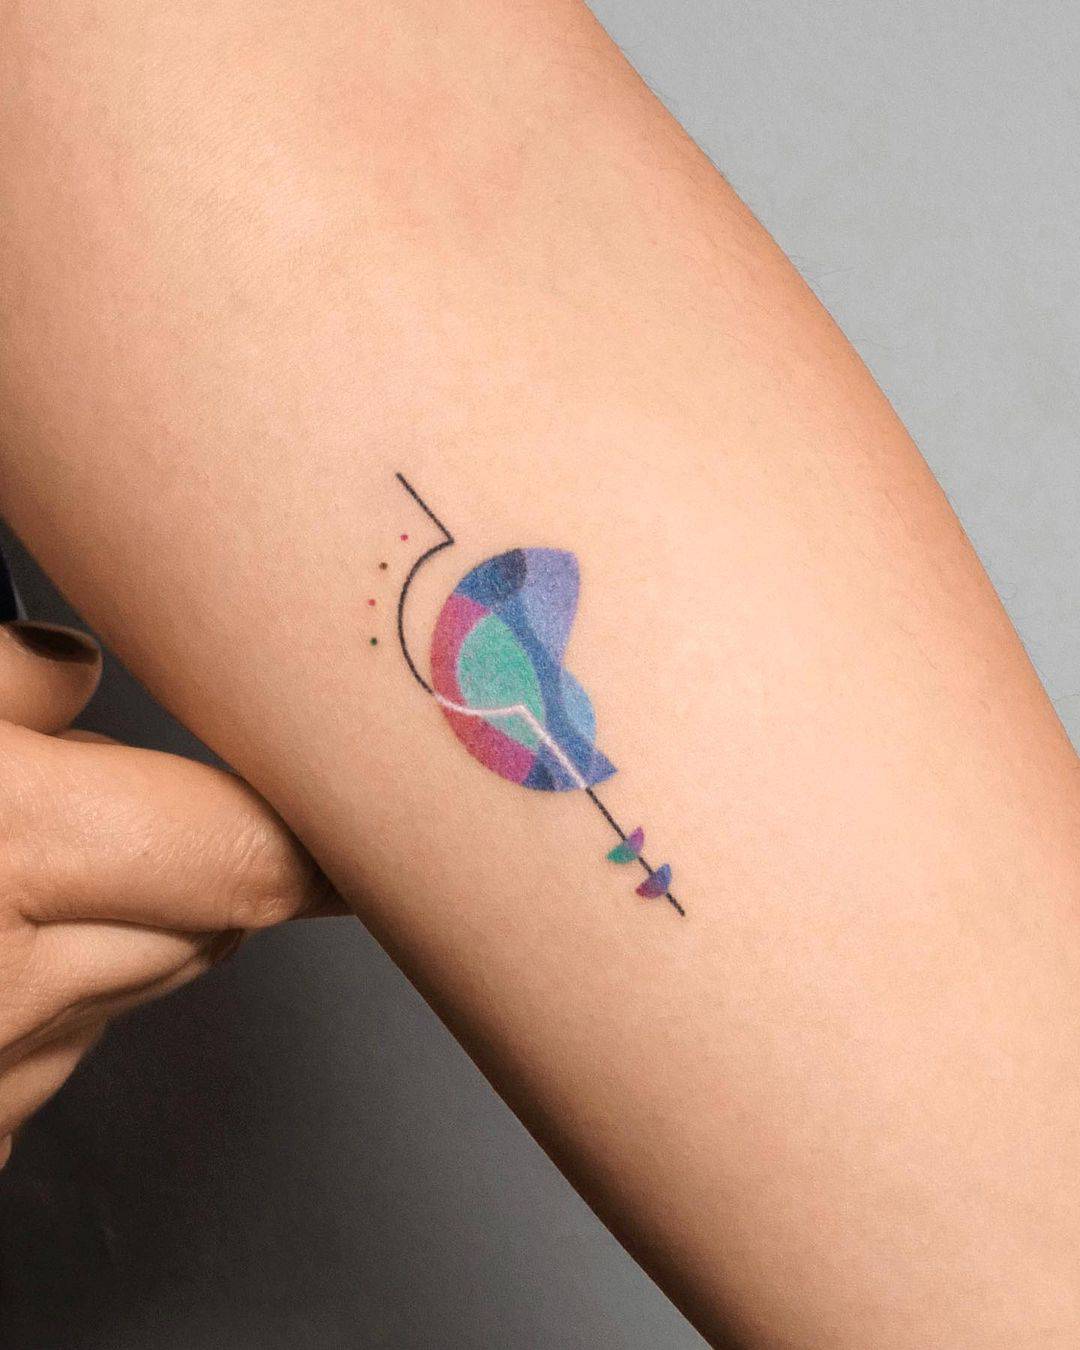 Abstract tattoo by tattooist basil